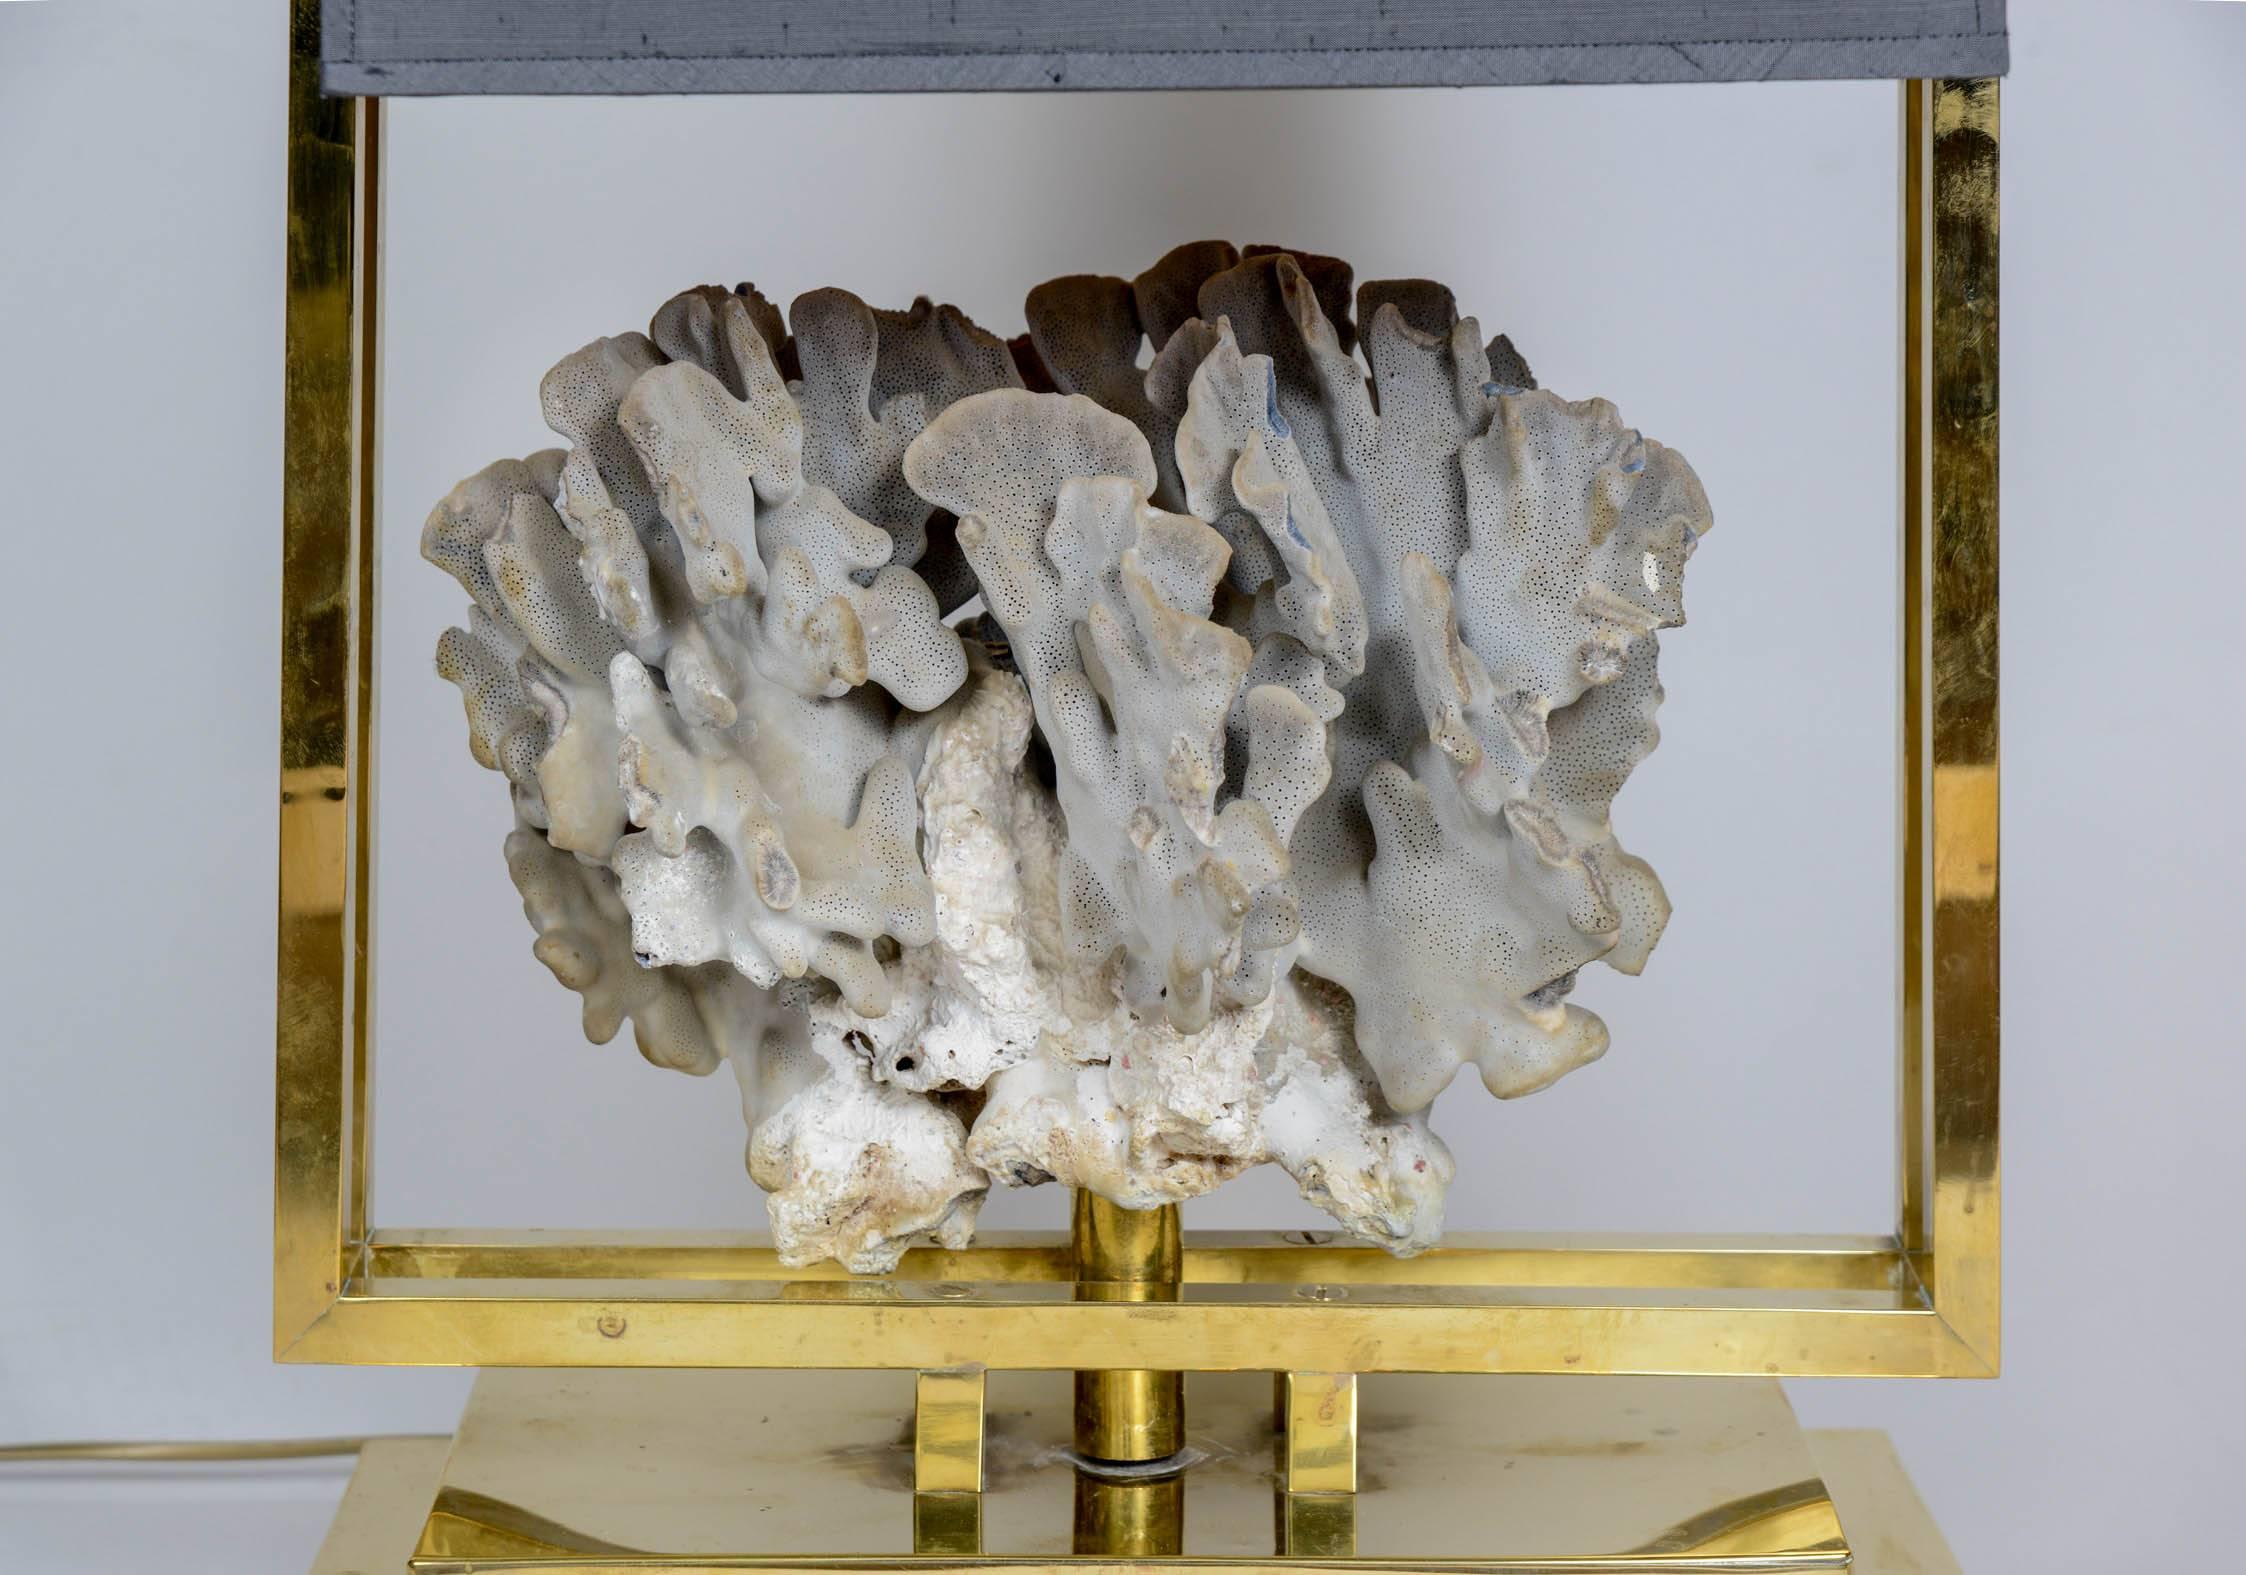 Luxuriöse quadratische Tischlampe aus Messing mit einem großen grauen Korallen-Mittelstück, eingefasst von einem Messingrahmen und abgerundet durch einen grauen Seidenschirm.